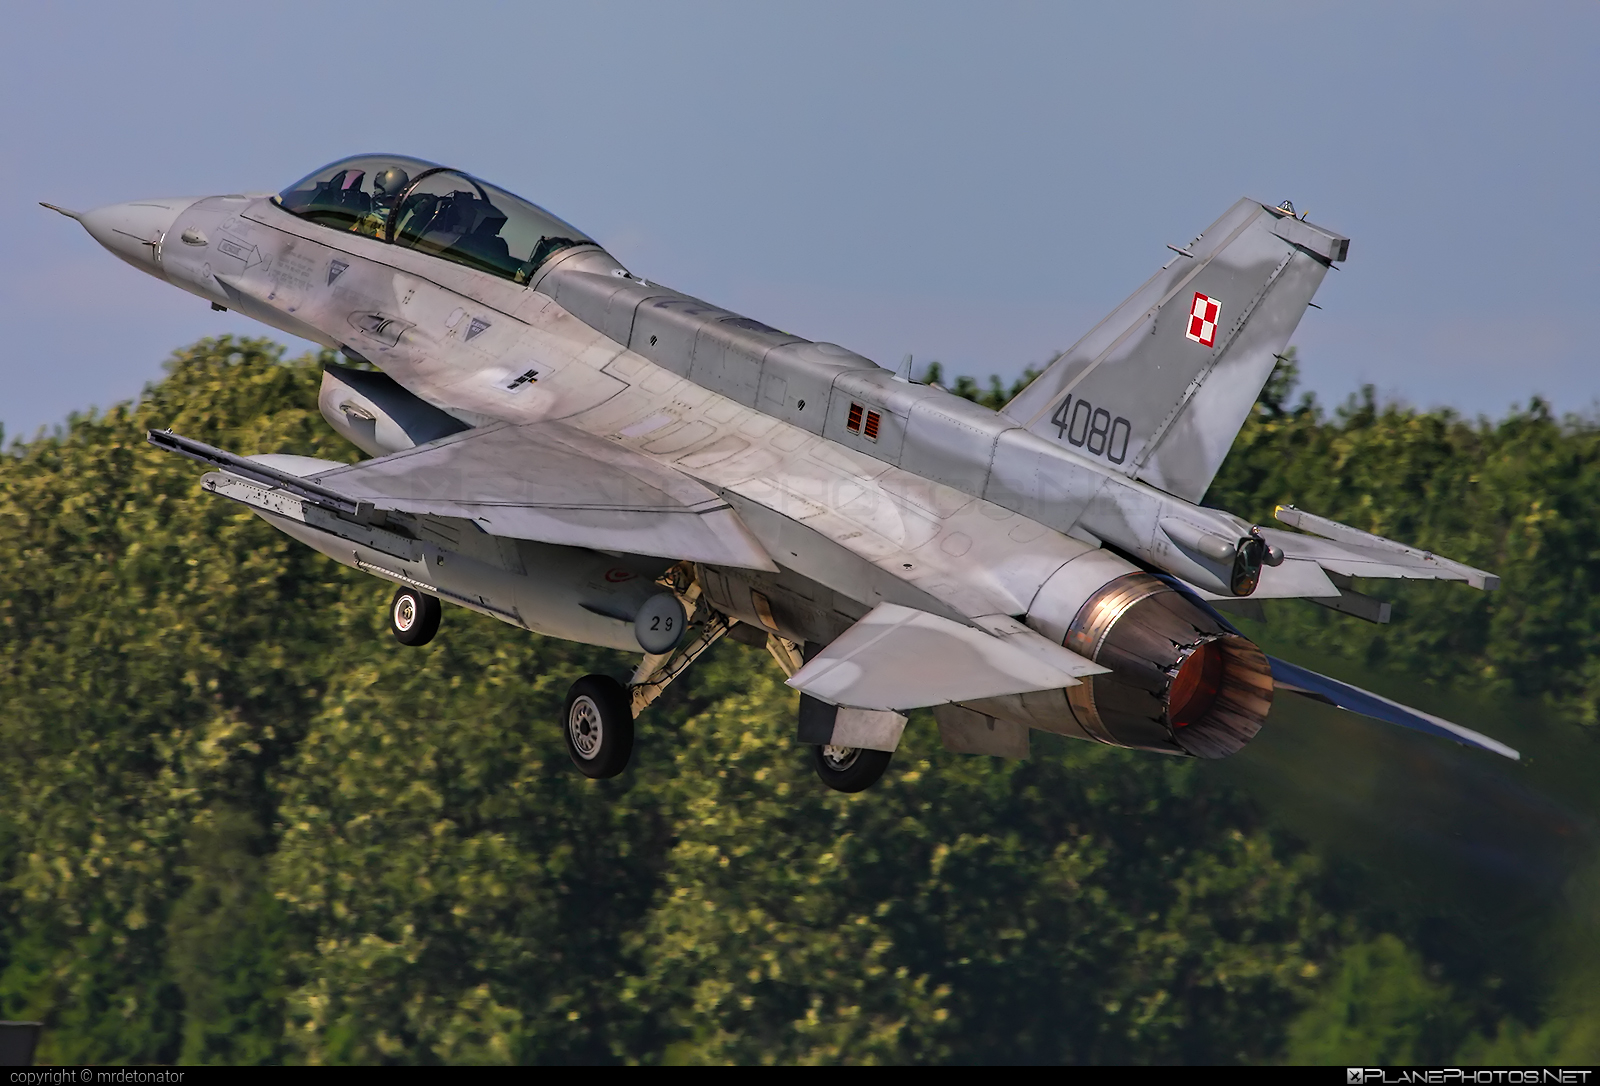 Lockheed Martin F-16D Fighting Falcon - 4080 operated by Siły Powietrzne Rzeczypospolitej Polskiej (Polish Air Force) #f16 #f16d #fightingfalcon #lockheedMartin #polishairforce #silypowietrzne